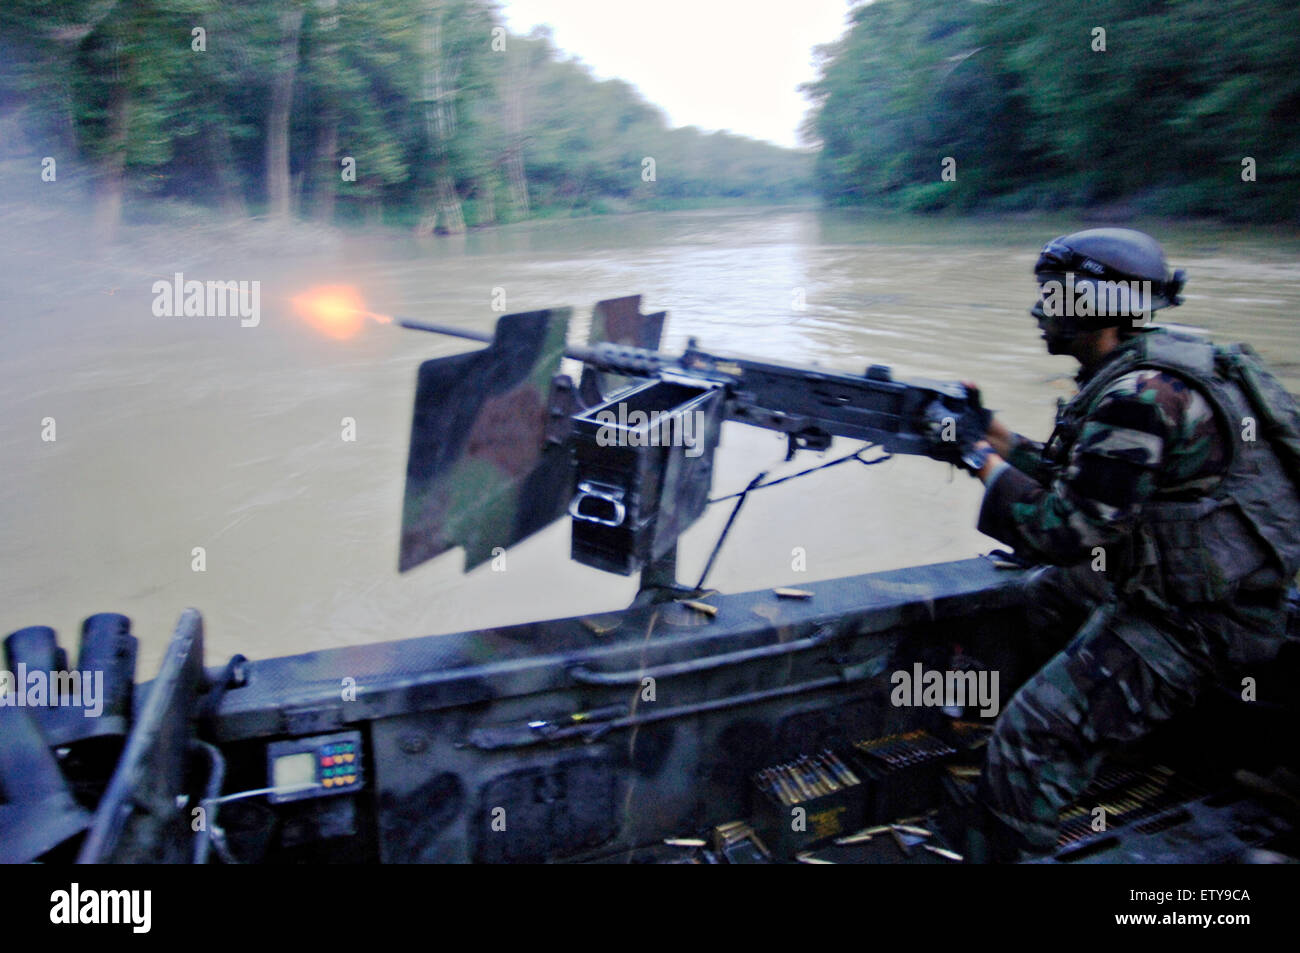 US Navy SEAL Special Warfare Combatant craft affectés à des membres de l'équipe de bateau 22 mans un GAU-17 minigun machine gun de tir réel au cours de la formation de patrouille le long de la rivière Salt le 25 août 2007 à Fort Knox, Kentucky. Banque D'Images